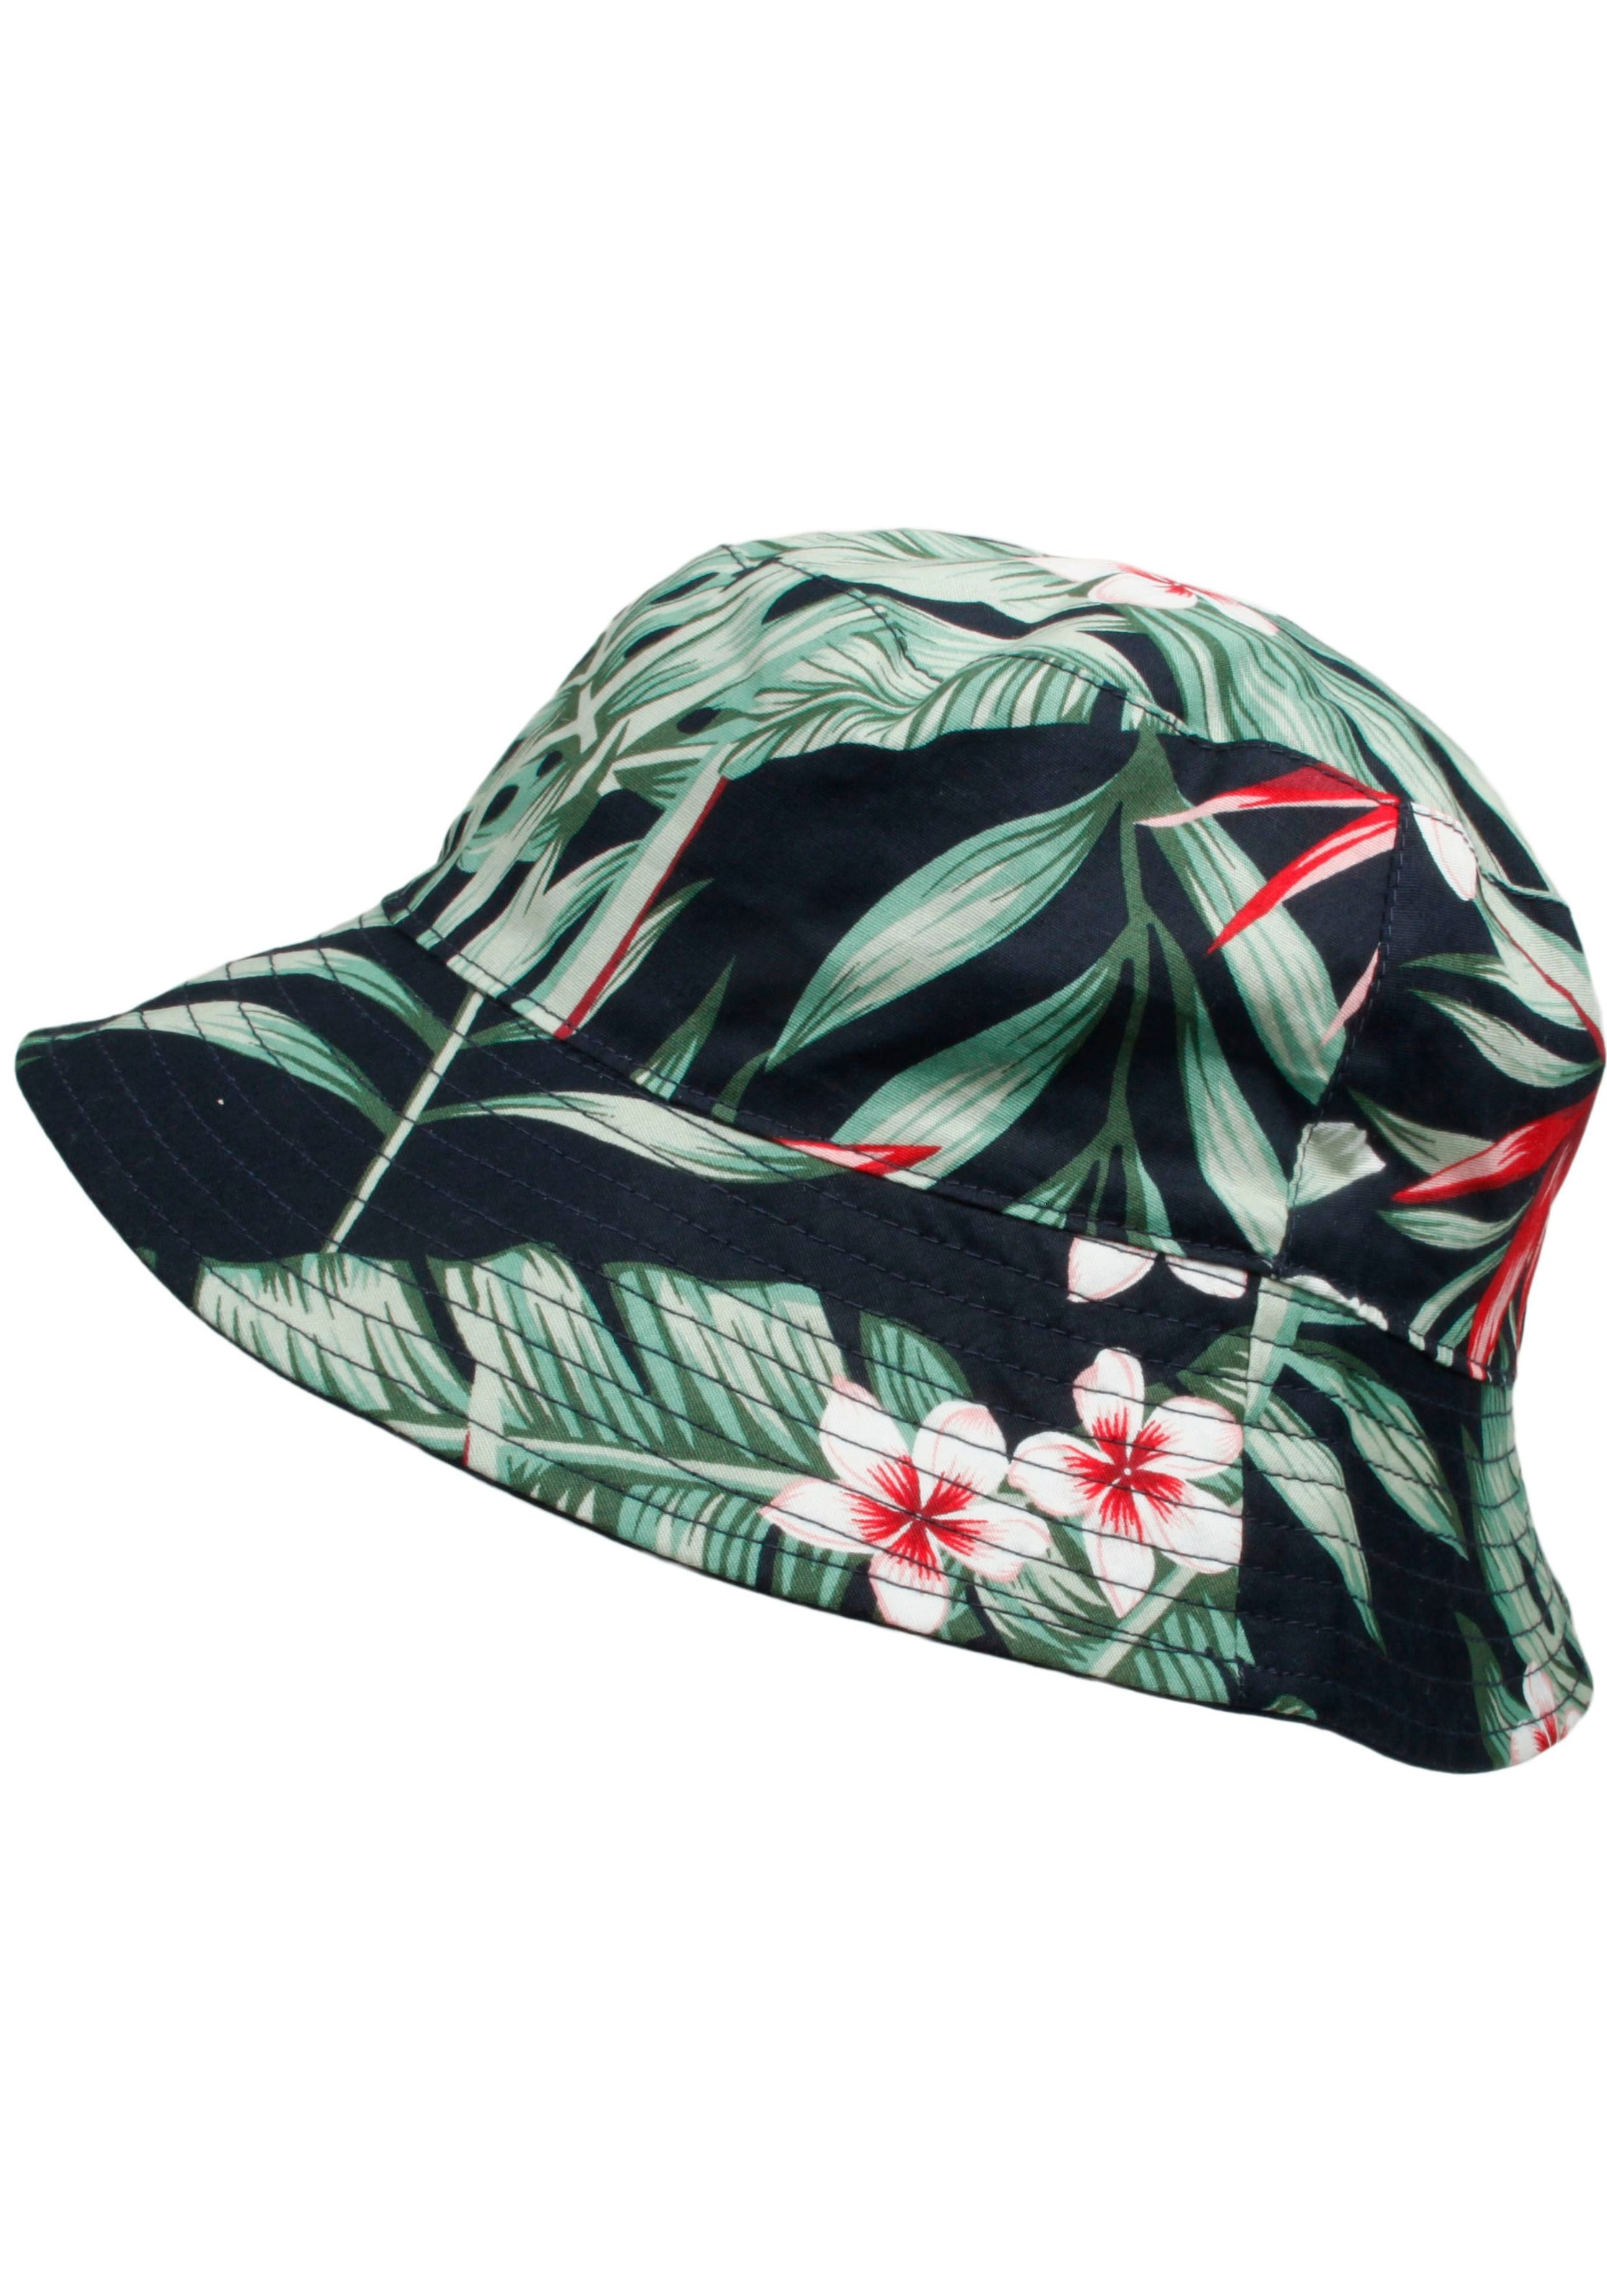 Hüte online kaufen | Trendy Hut jetzt shoppen auf